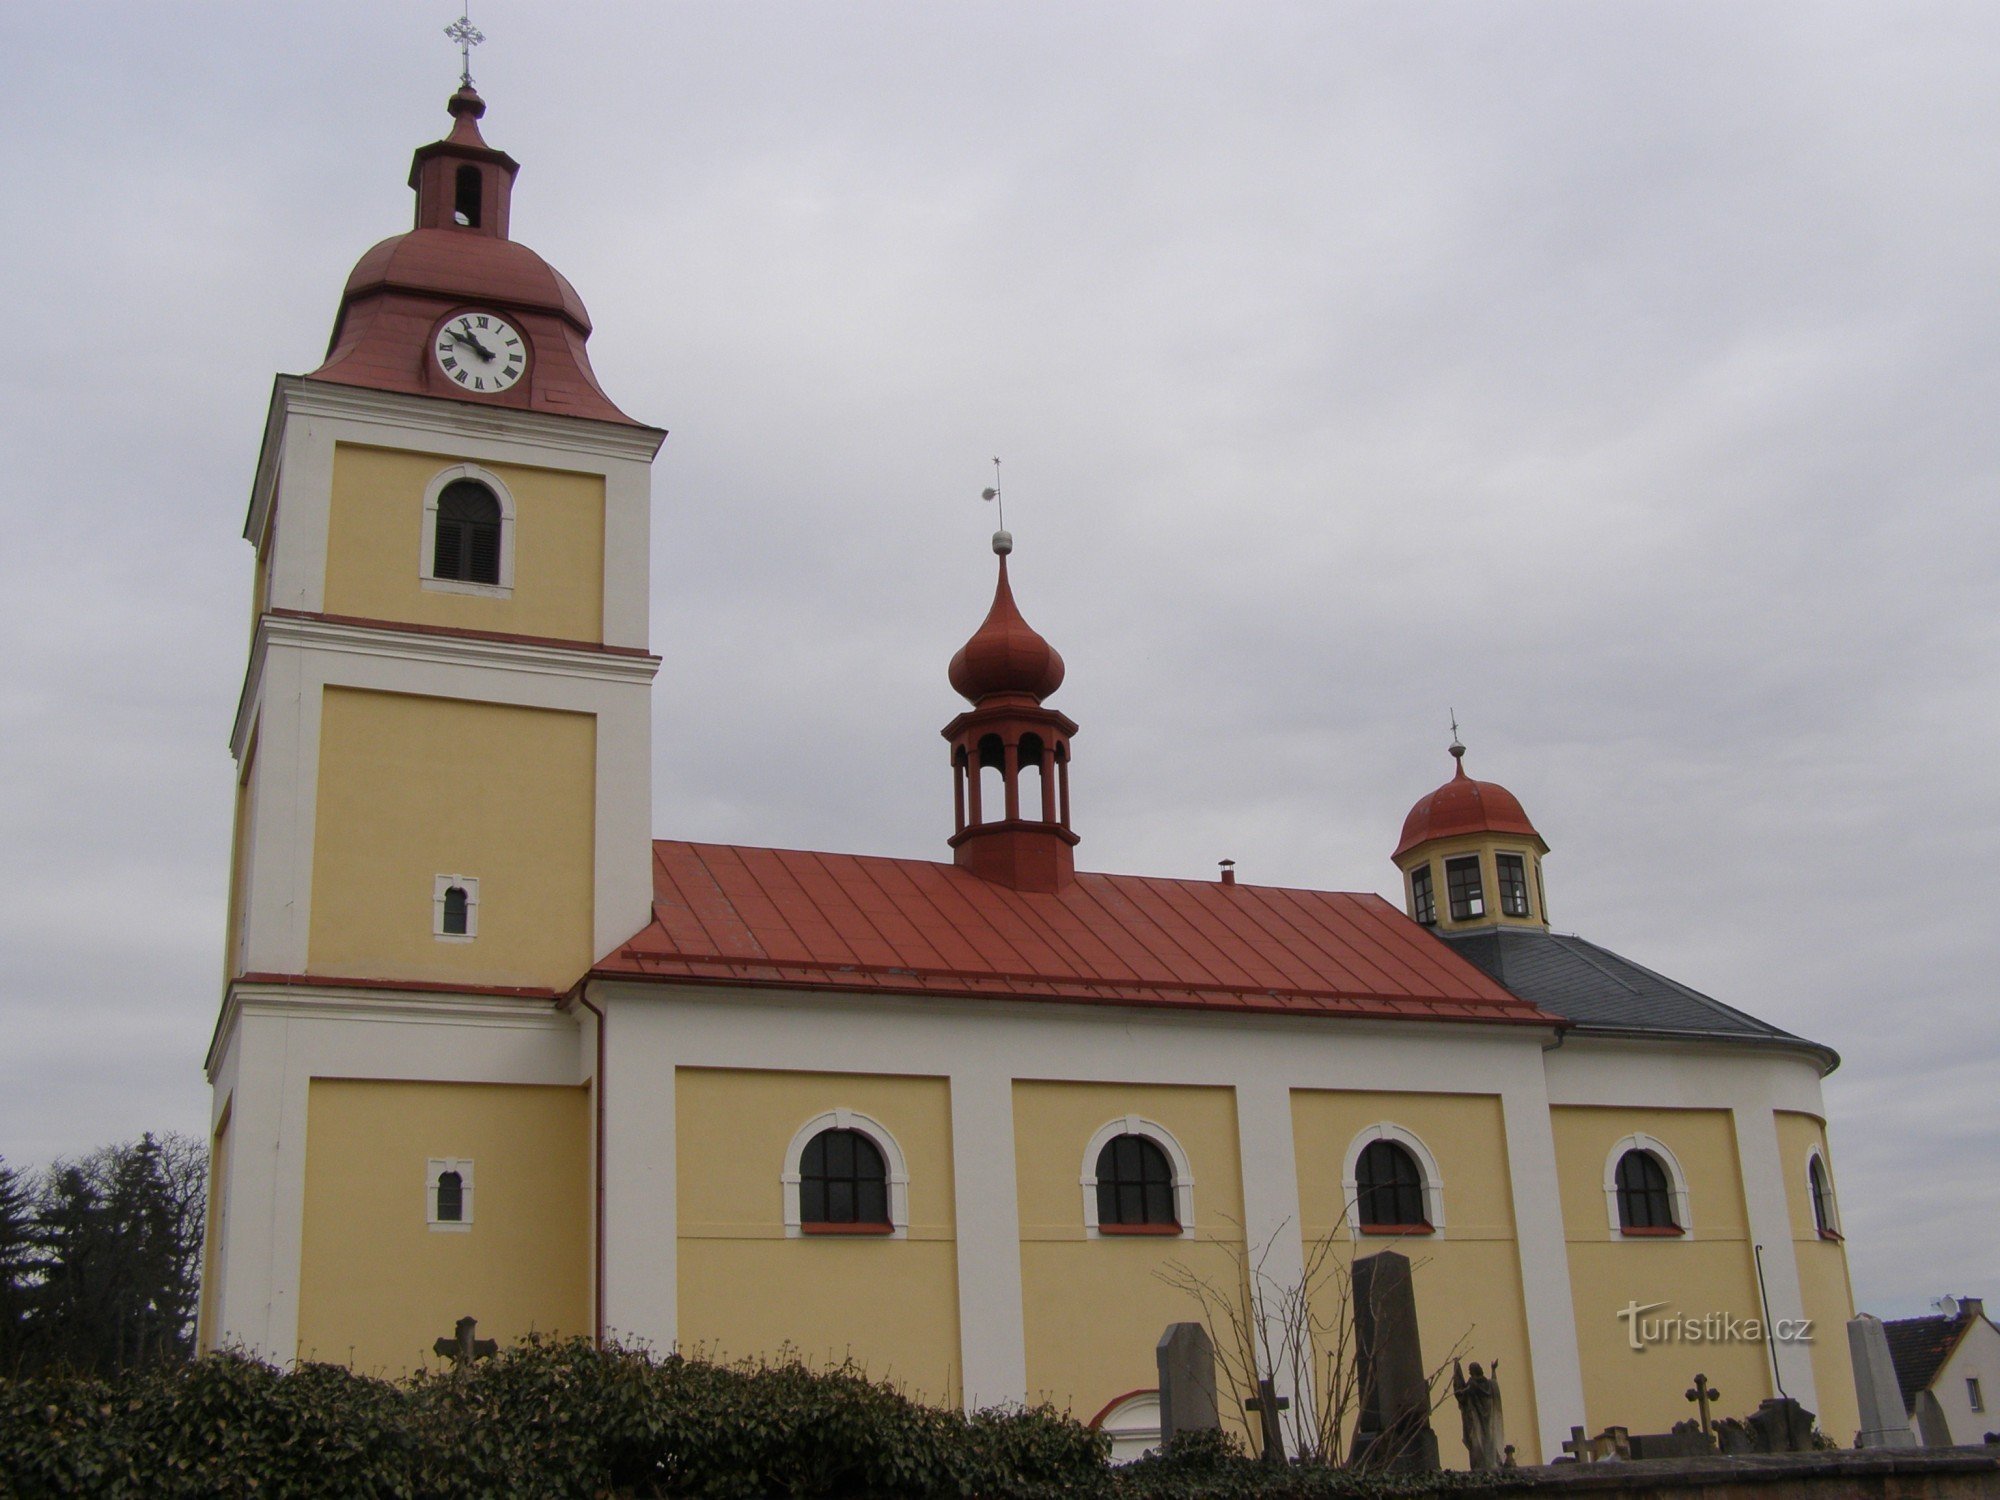 Bělohrad Spa - Alla helgons kyrka